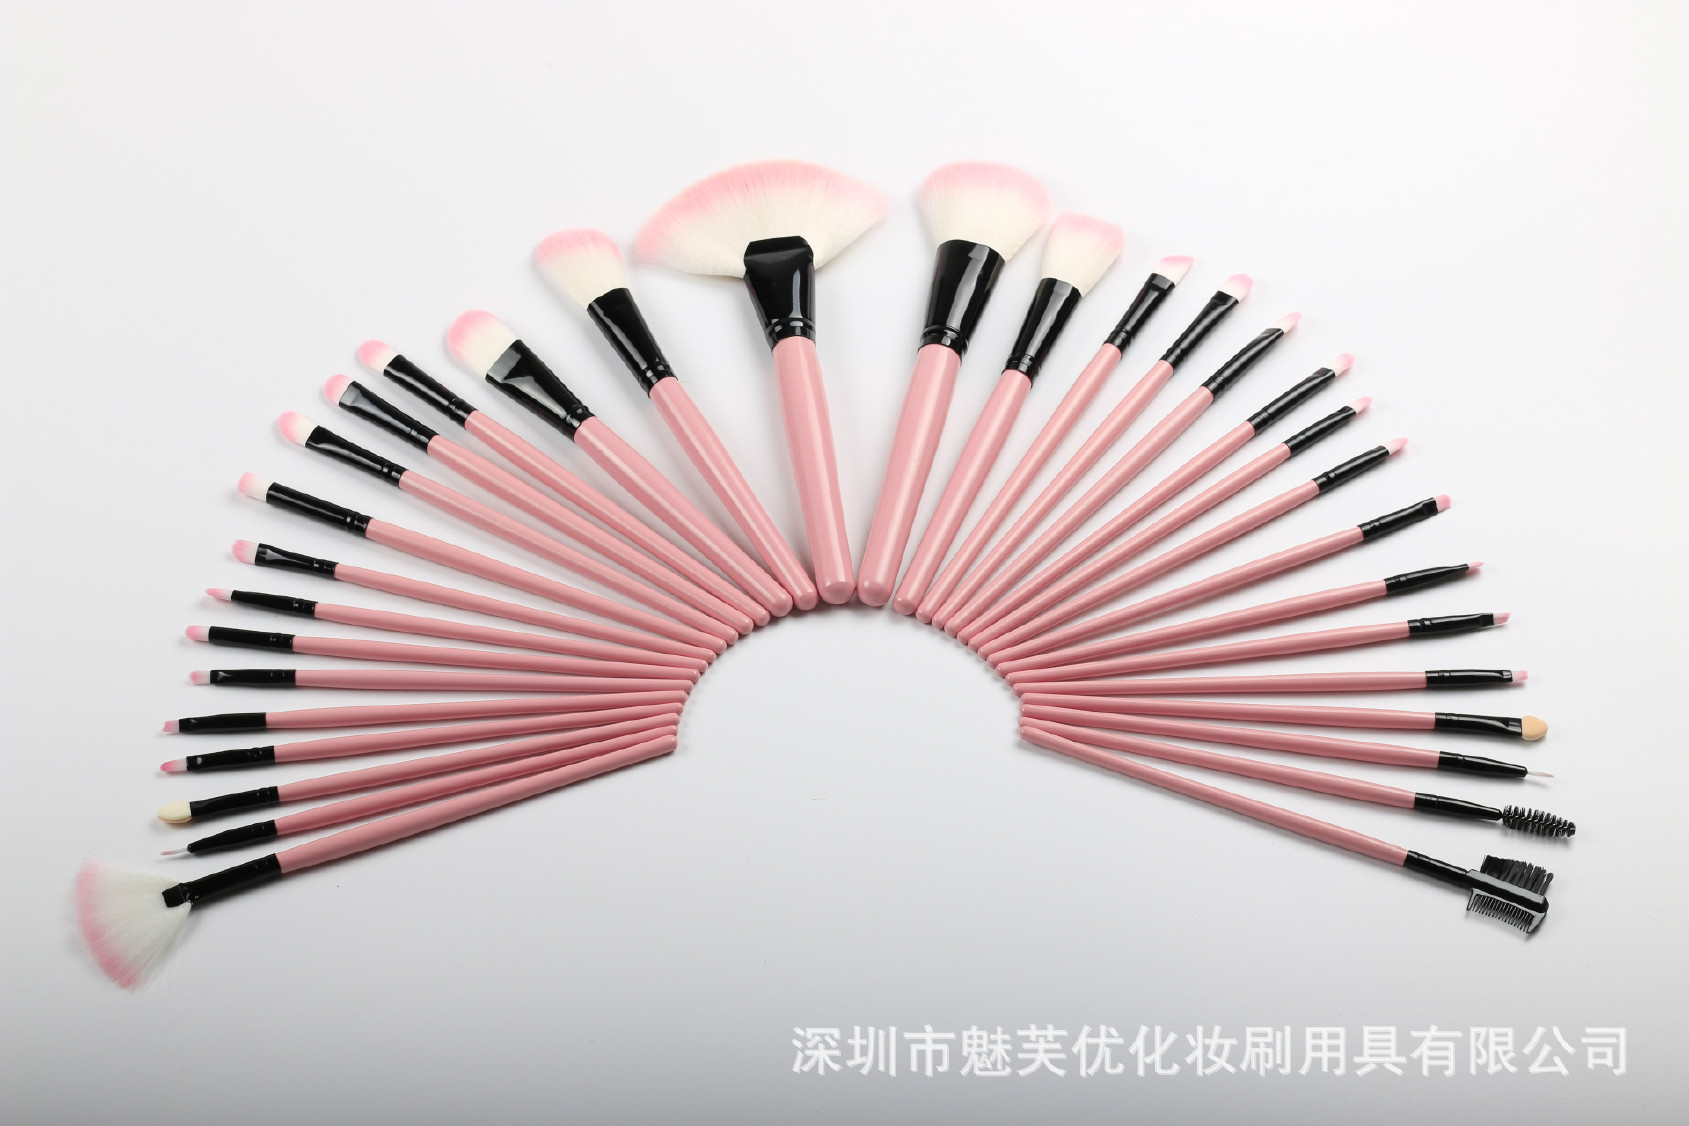 厂家直销32支化妆刷套装 木柄粉色、黑色美妆工具 支持定制示例图11